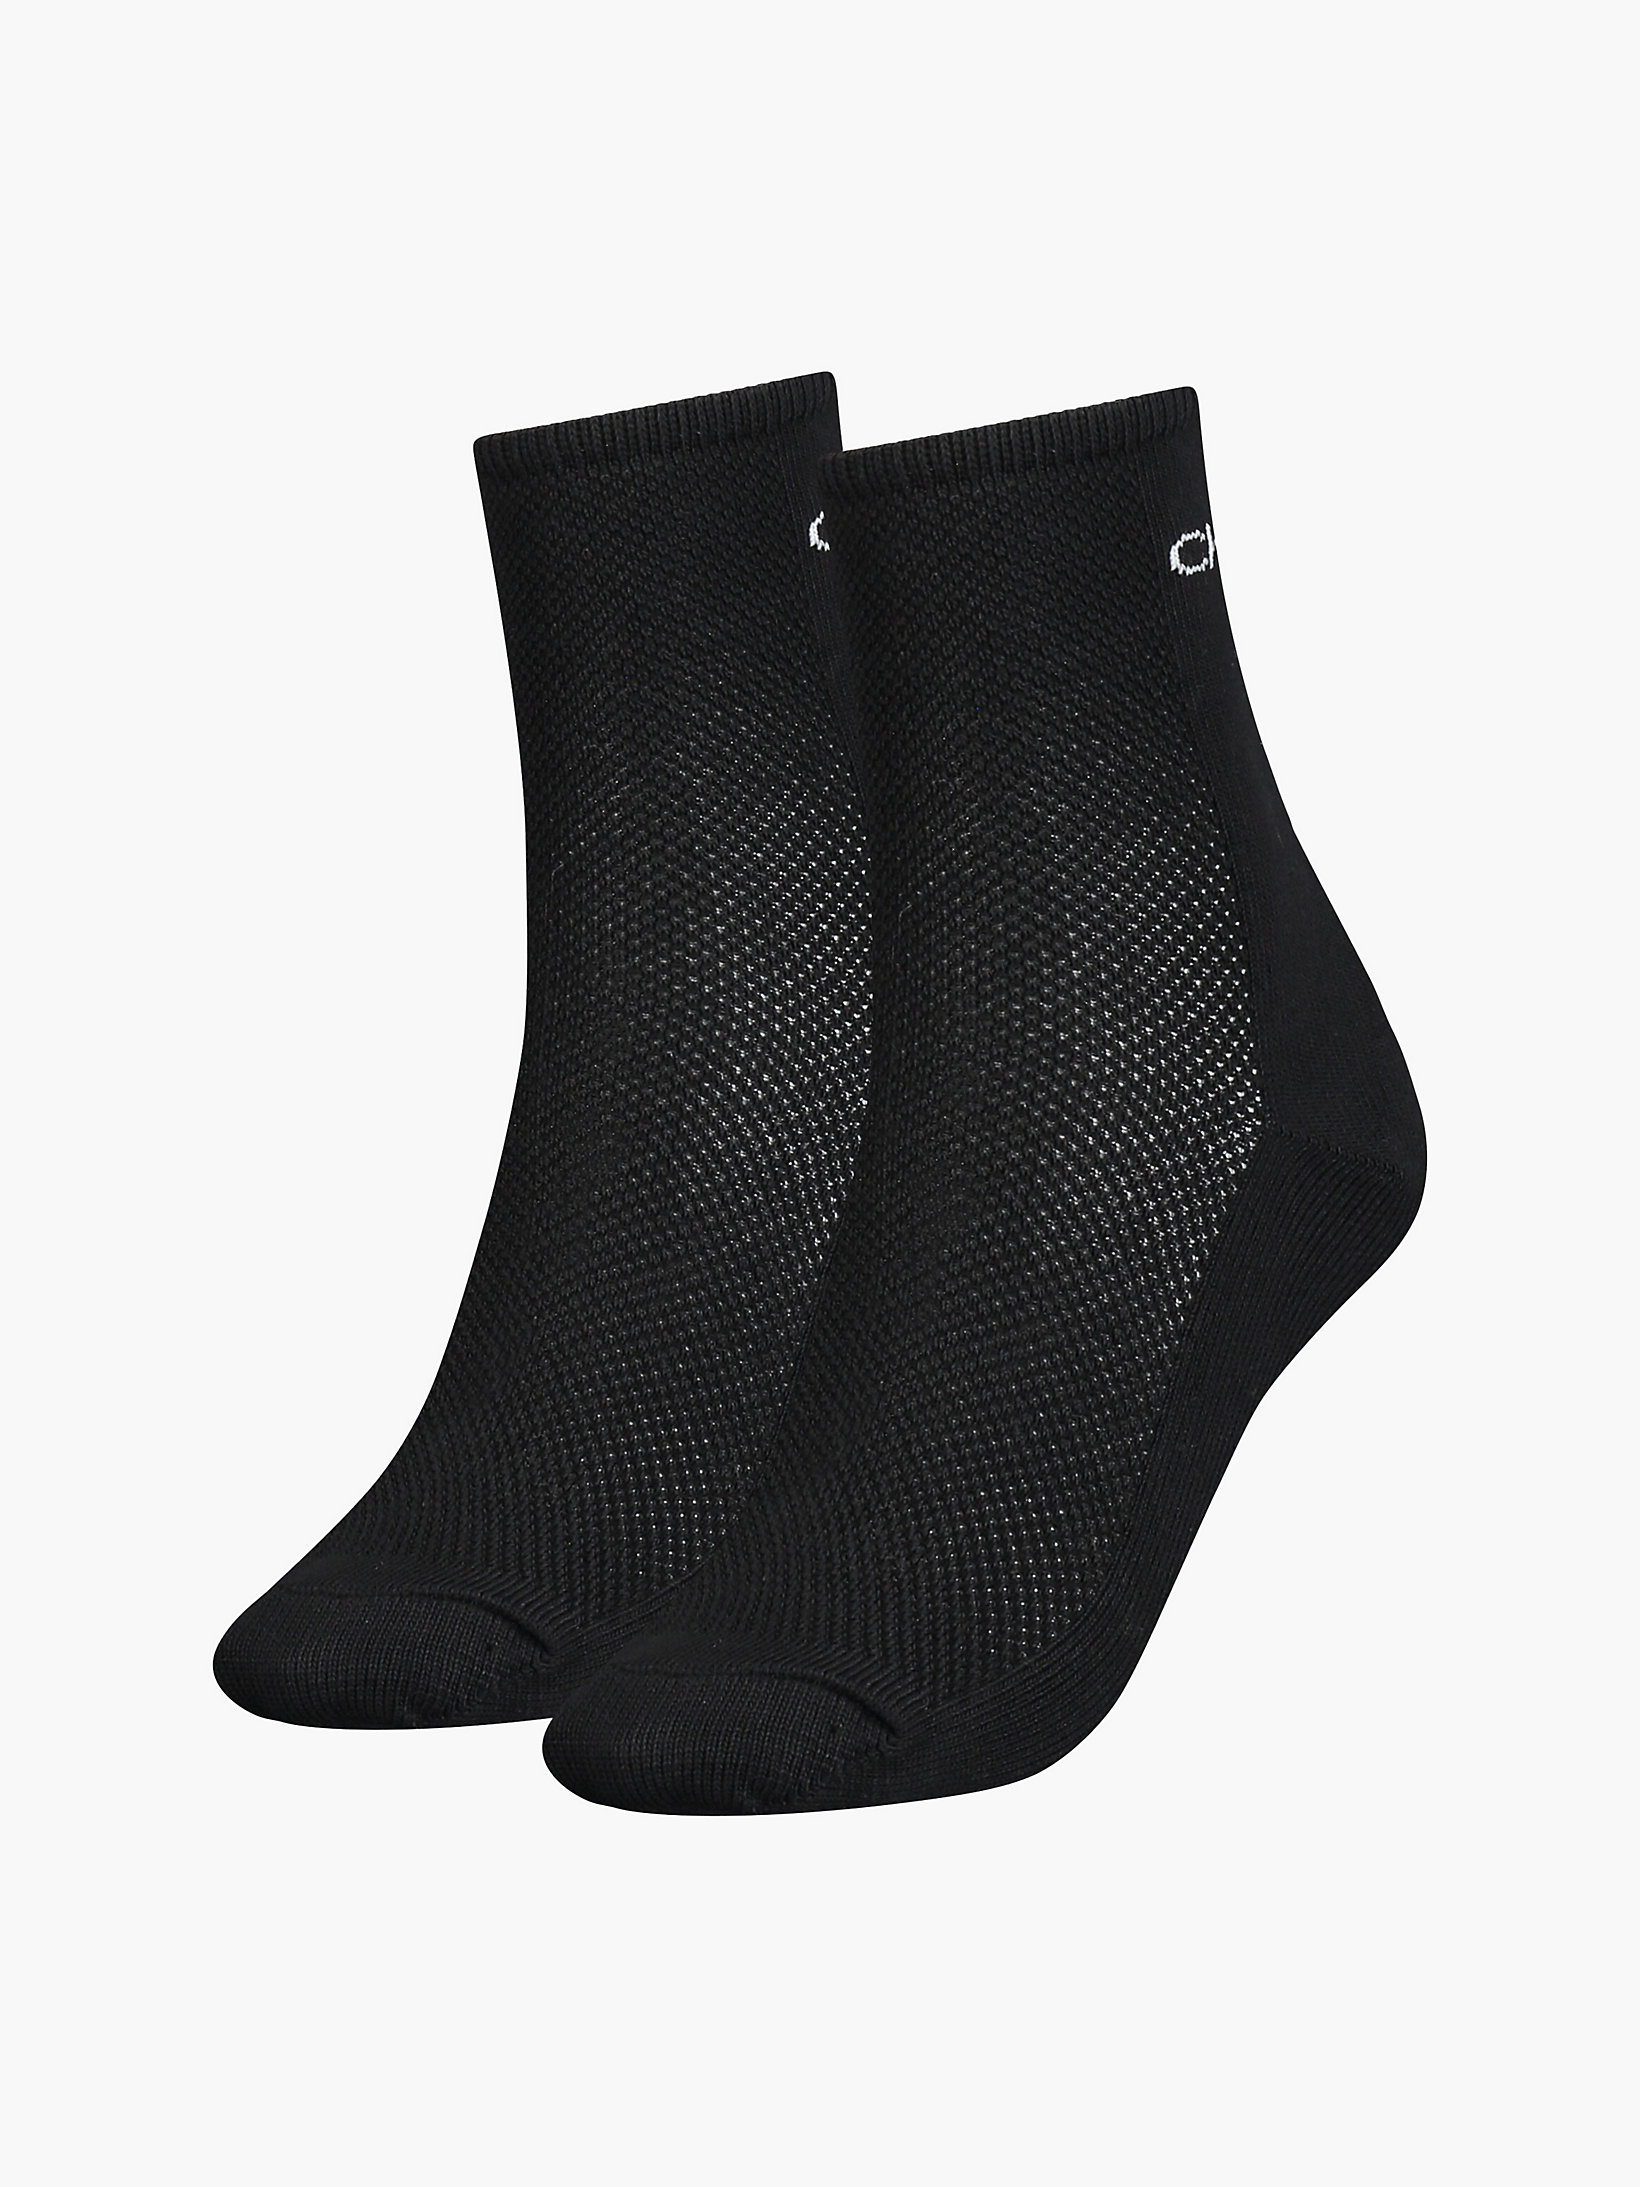 Black 2 Pack Ankle Socks undefined women Calvin Klein